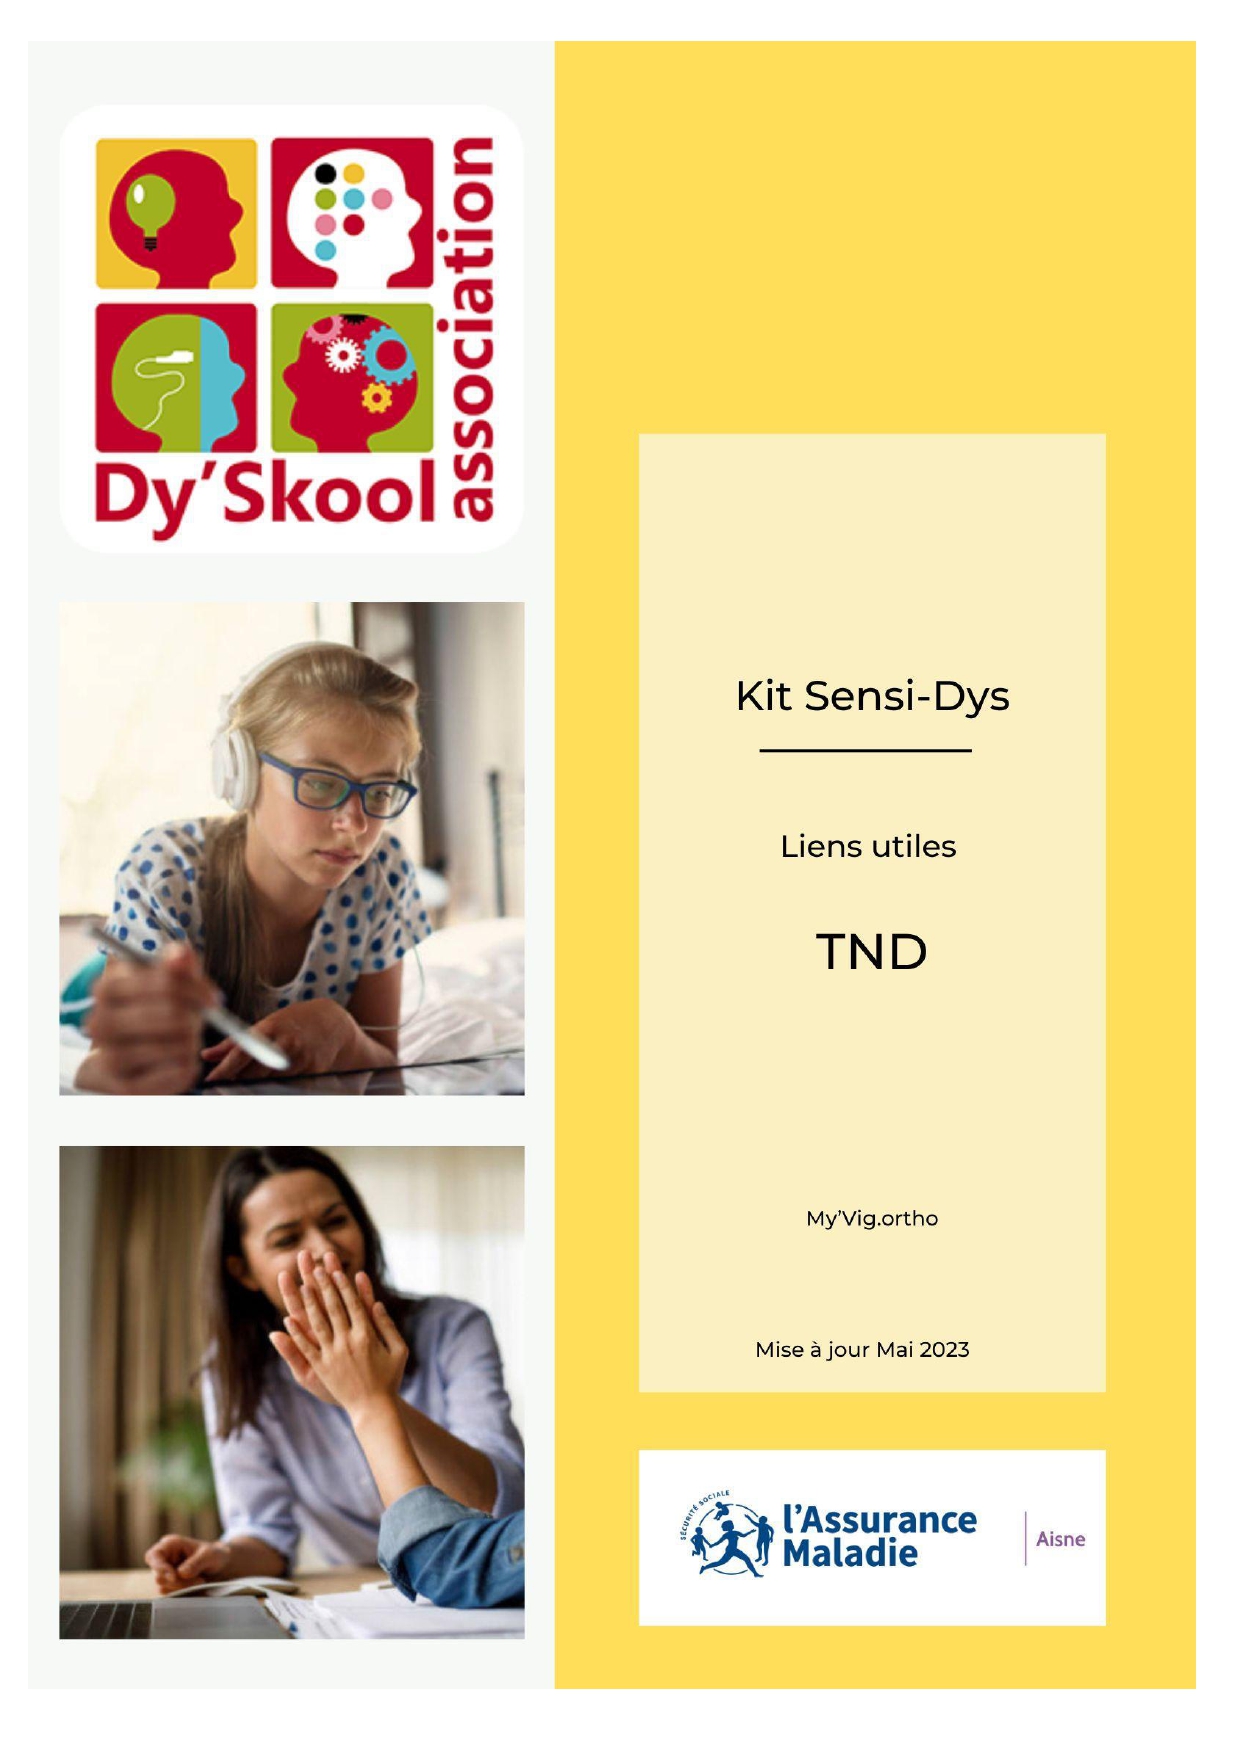 Les Liens utiles du Kit SensiDYS de Dy'Skool 